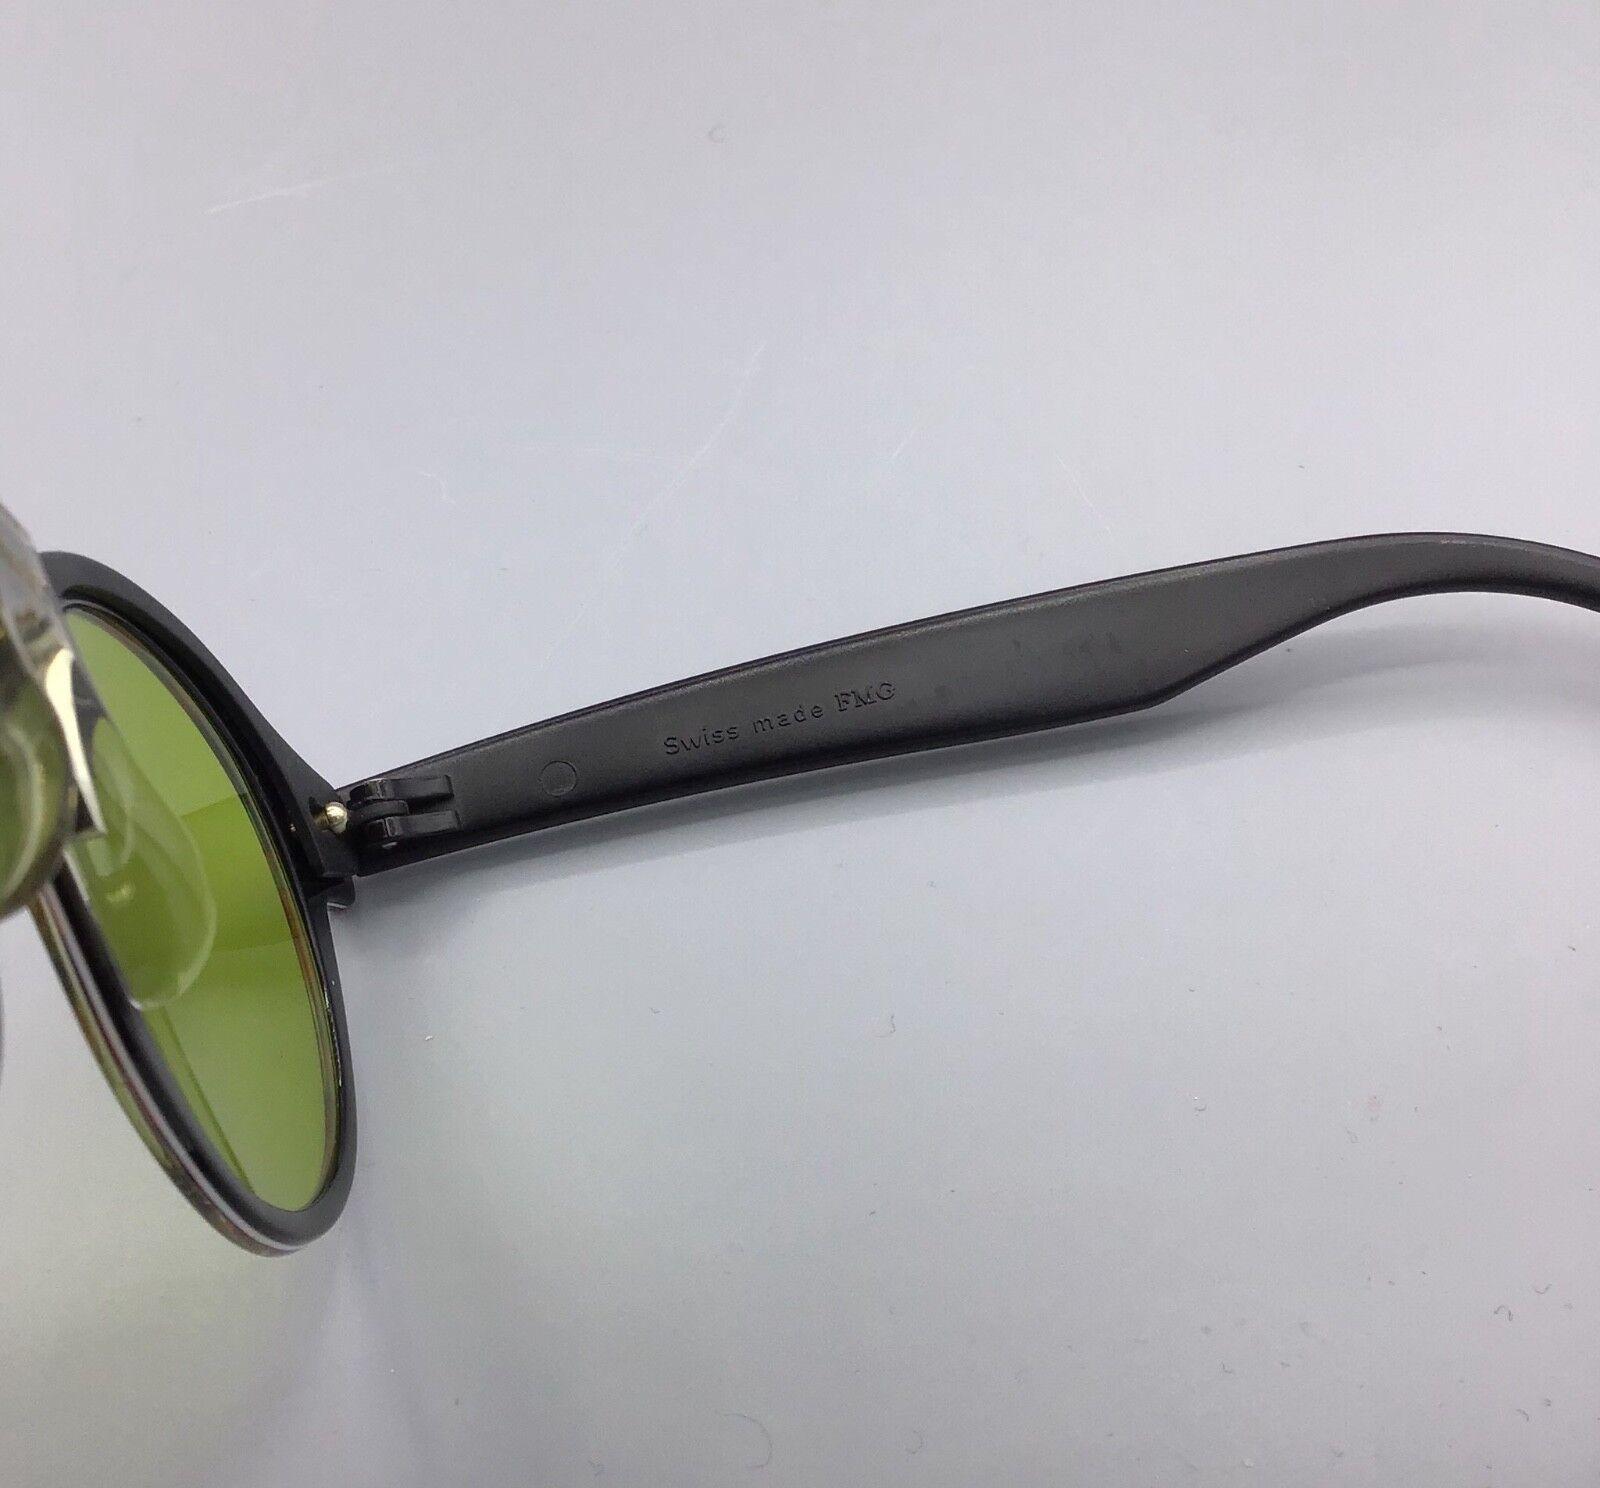 Swatch occhiali vintage da sole Made in Switzerland Sunglasses sonnenbrillen